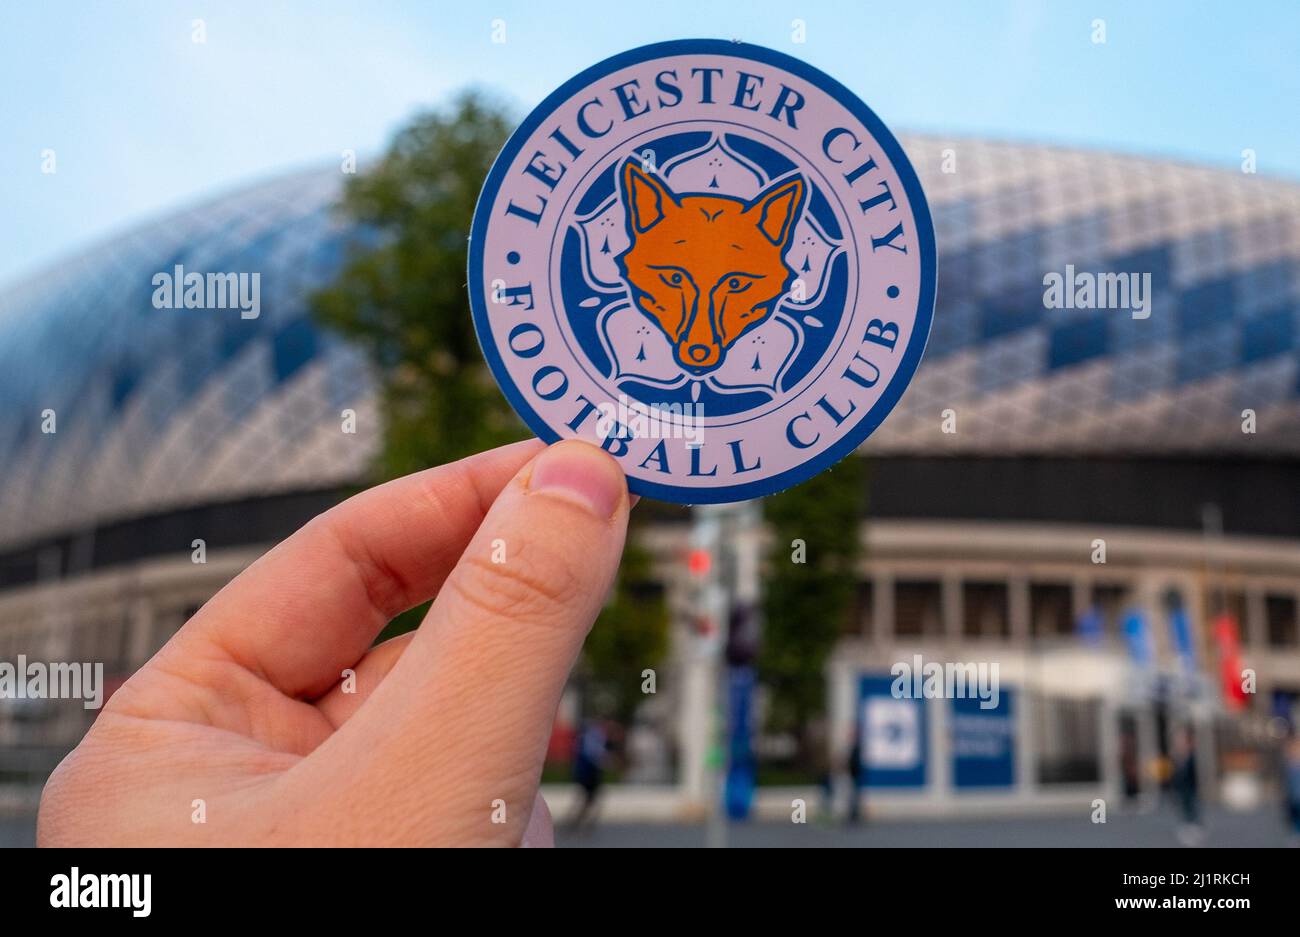 12 septembre 2021, Leicester, Royaume-Uni.Leicester City F.C.Emblème du club de football en toile de fond d'un stade moderne. Banque D'Images